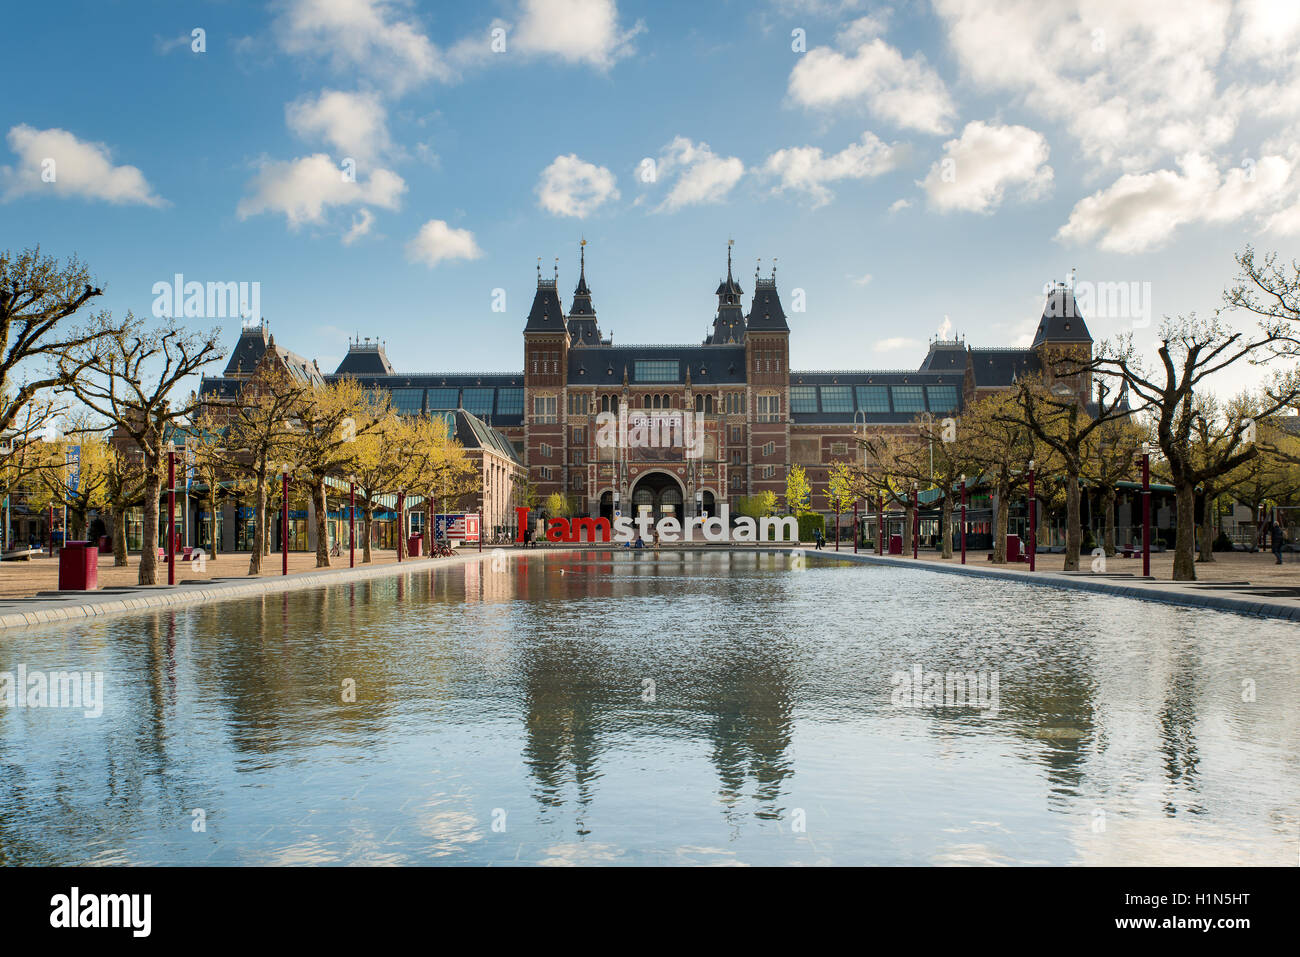 Rijksmuseum Amsterdam quartier des musées avec les Offres spéciales Iamsterdam mots est montré dans Amsterdam, Pays-Bas Banque D'Images